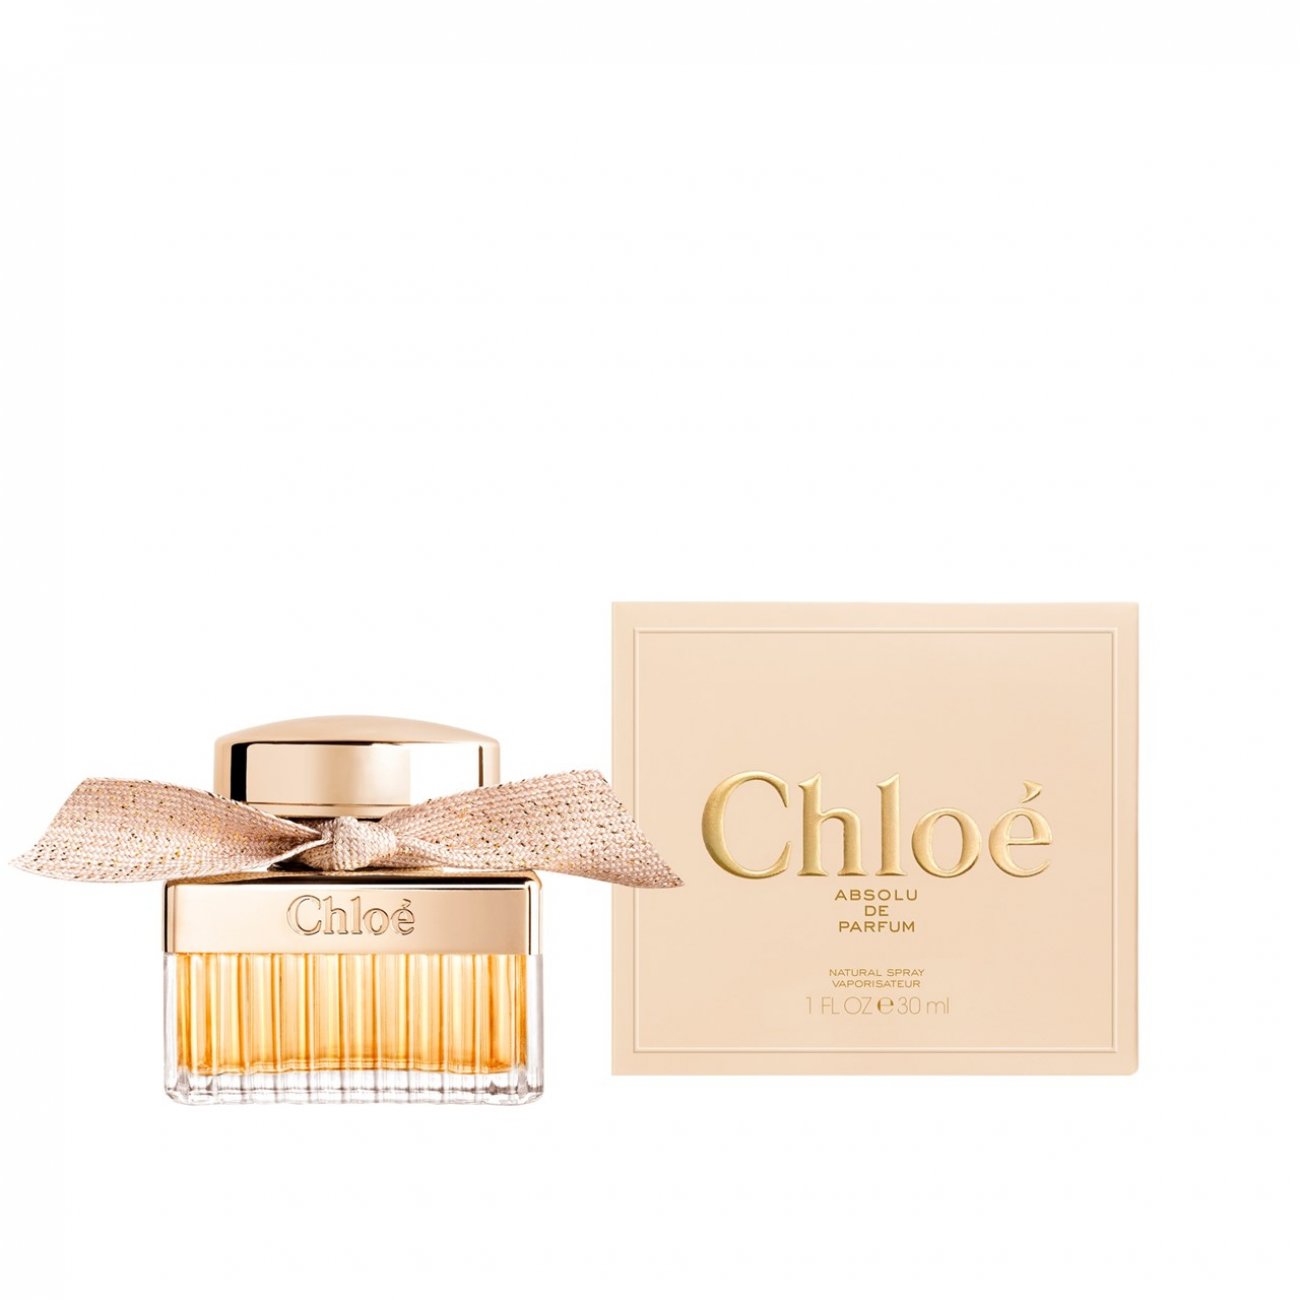 Buy Chloé Absolu de Parfum Eau de 30ml (1.0fl oz) · USA